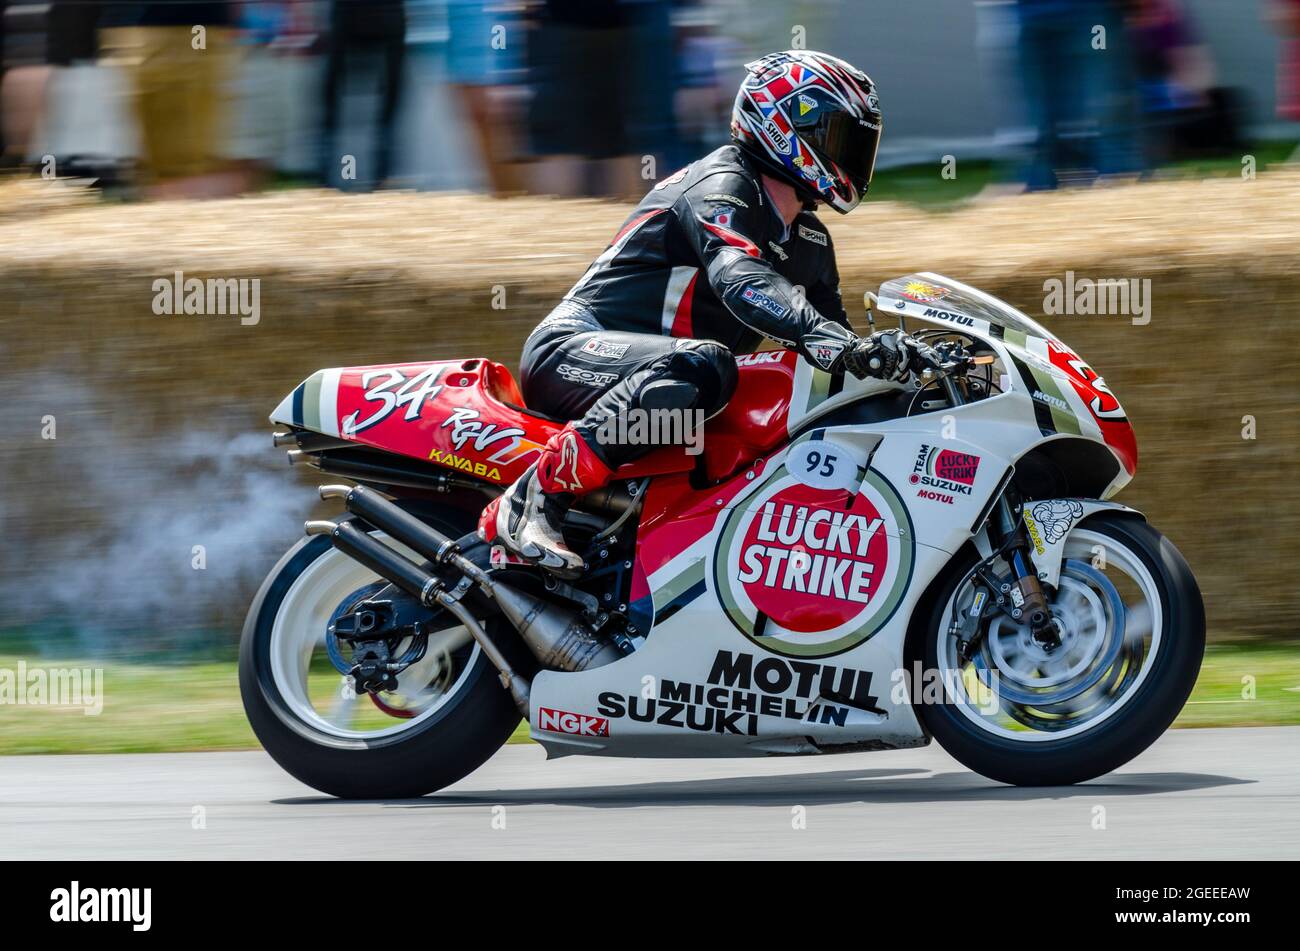 1995 Lucky Strike Suzuki RGV500 Gran Premio di motocicletta che corre sulla pista di salita al Goodwood Festival of Speed Motor Racing evento 2014 Foto Stock